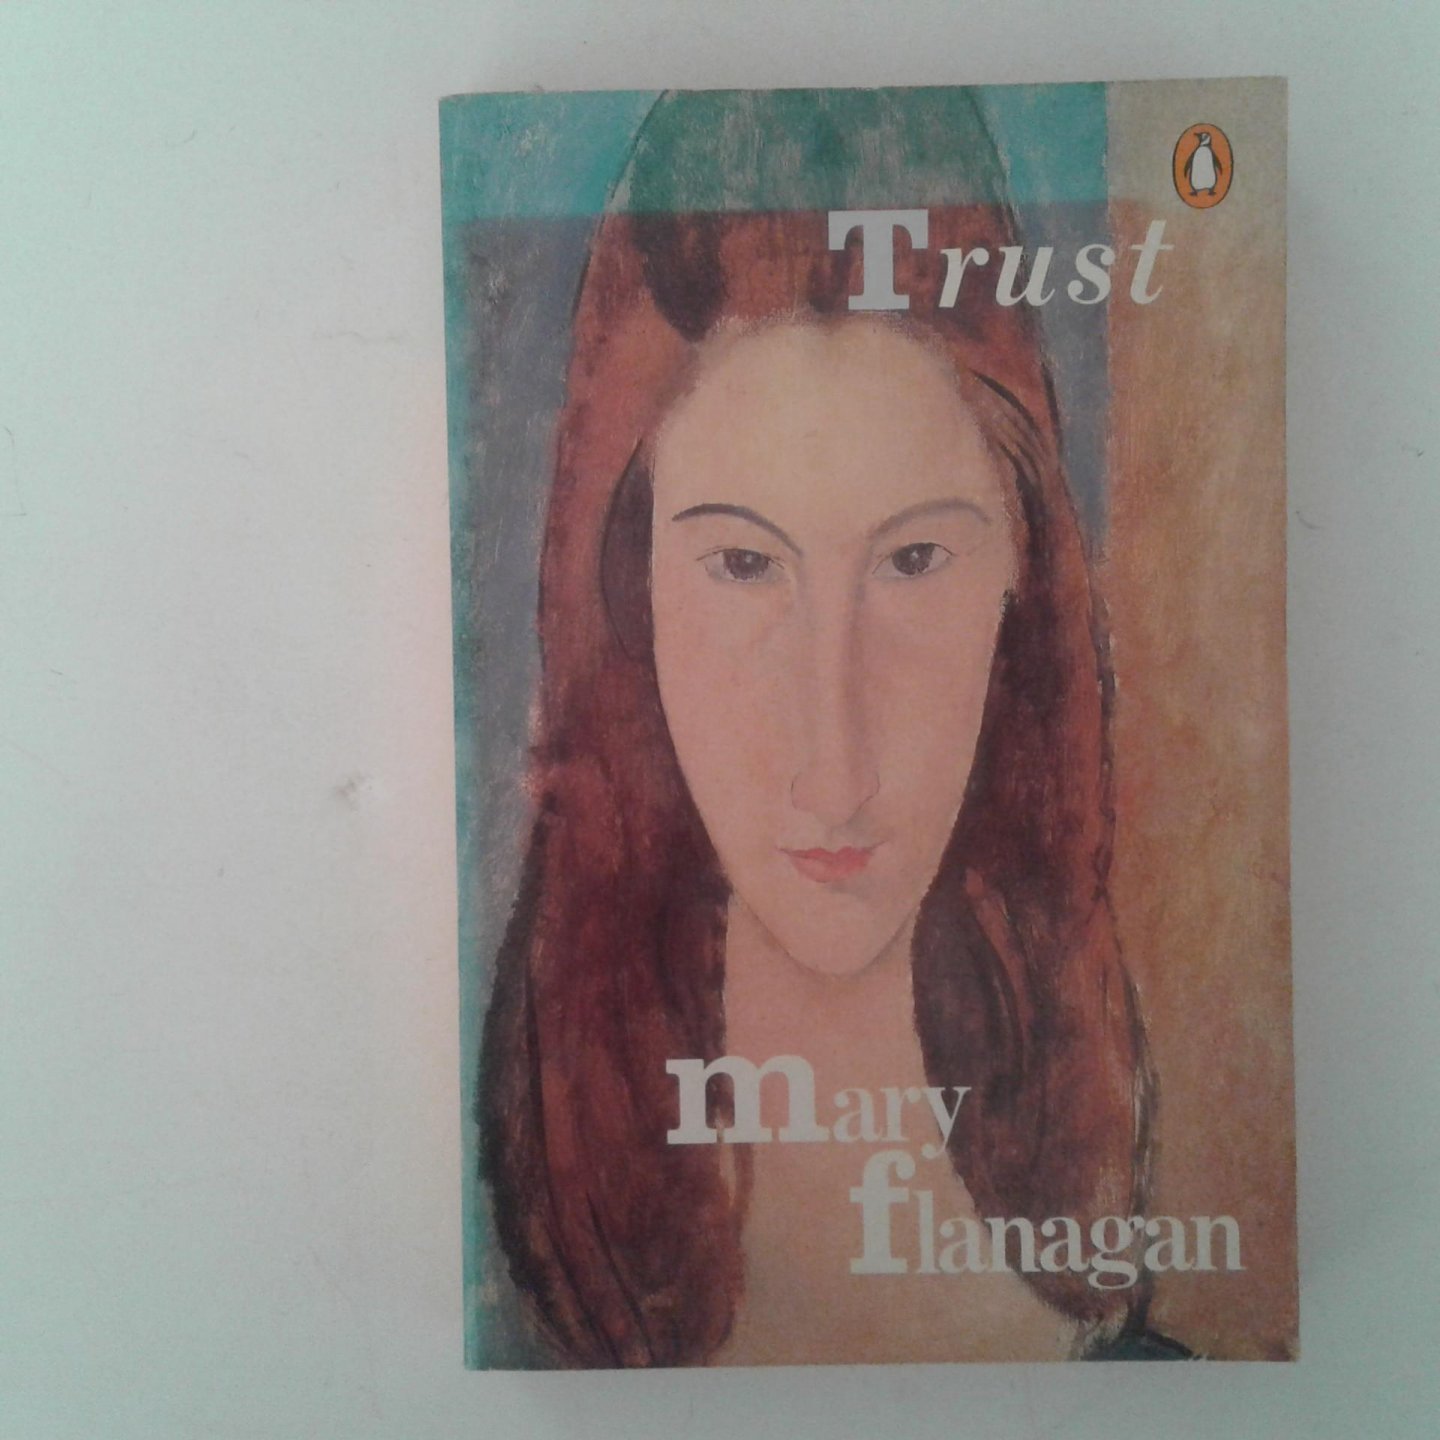 Flanagan, Mary - Trust